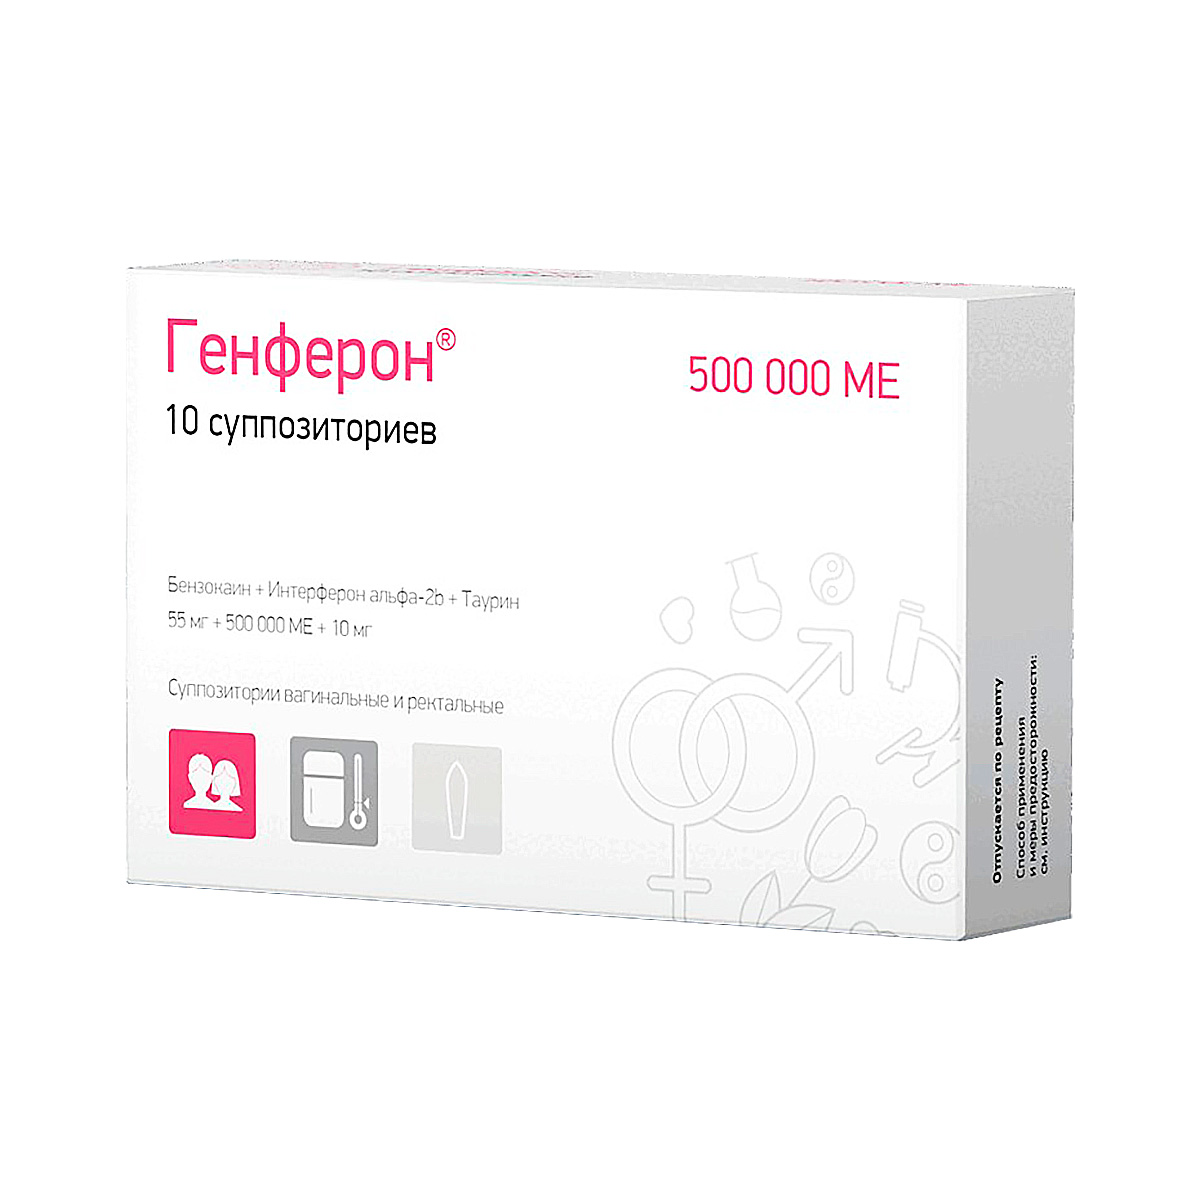 Генферон 55 мг+500000 ME+10 мг суппозитории вагинальные и ректальные 10 шт